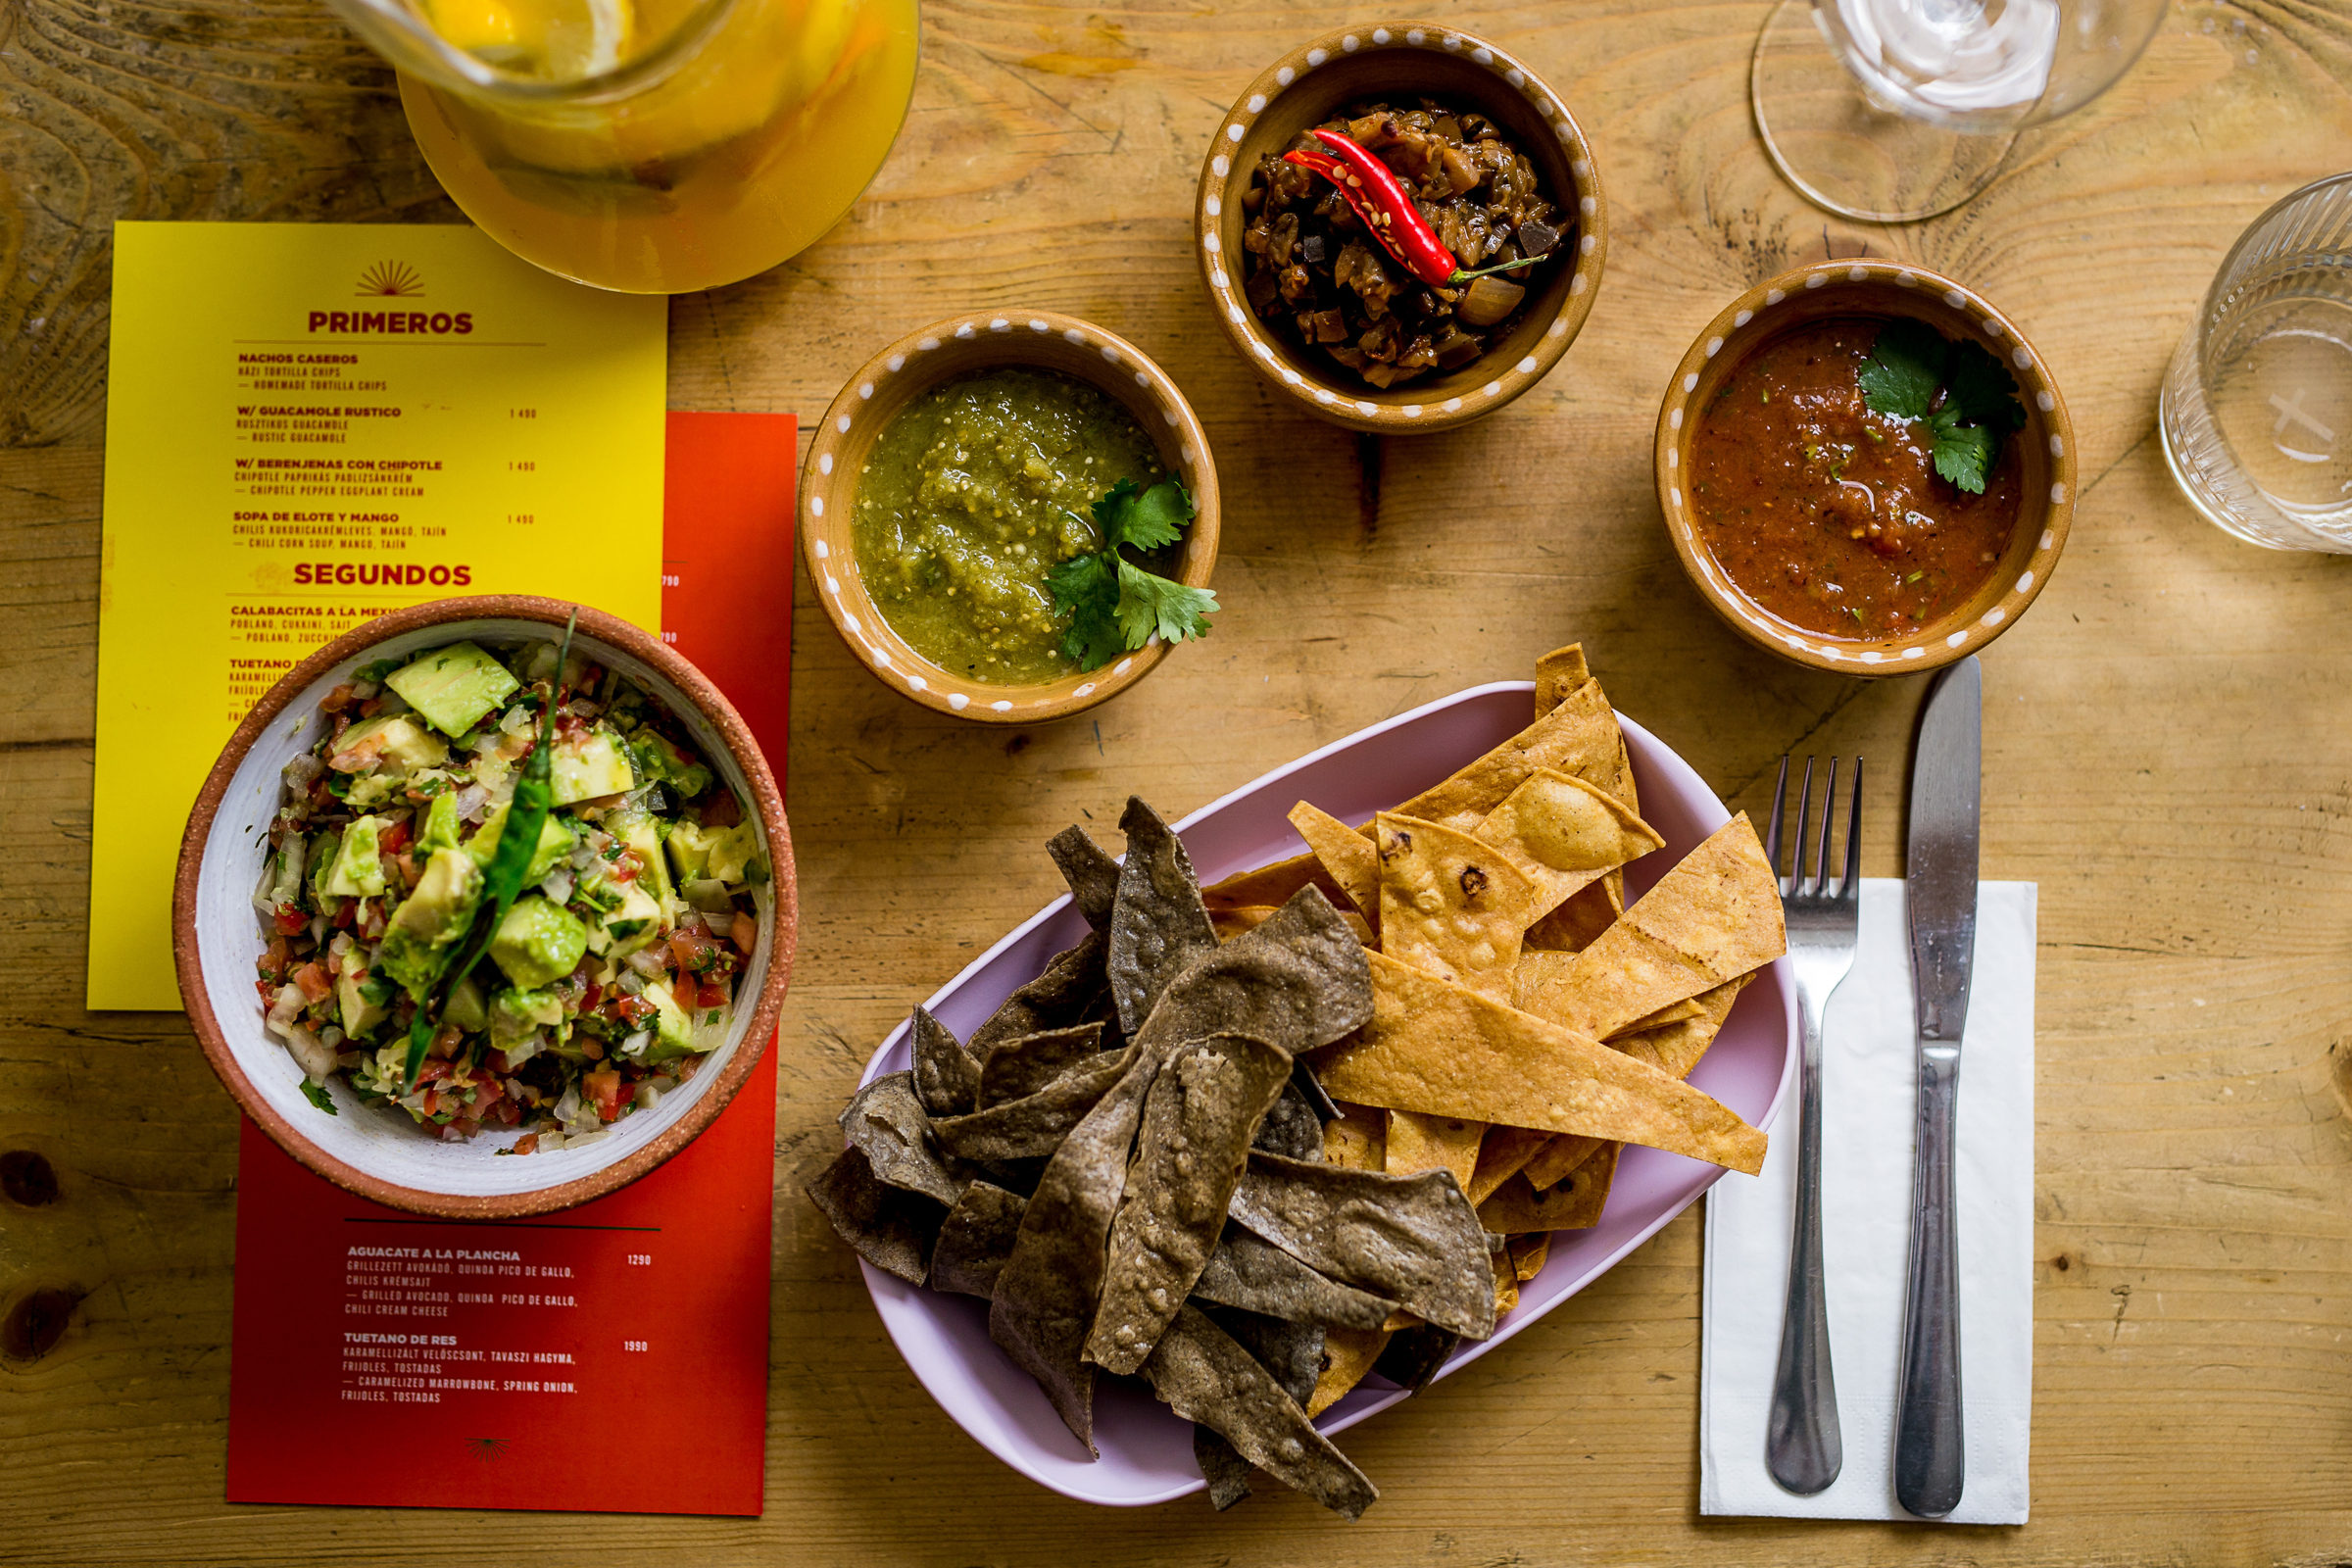 ¡Buenas tardes! – megjött Tereza eredeti mexikói konyhája